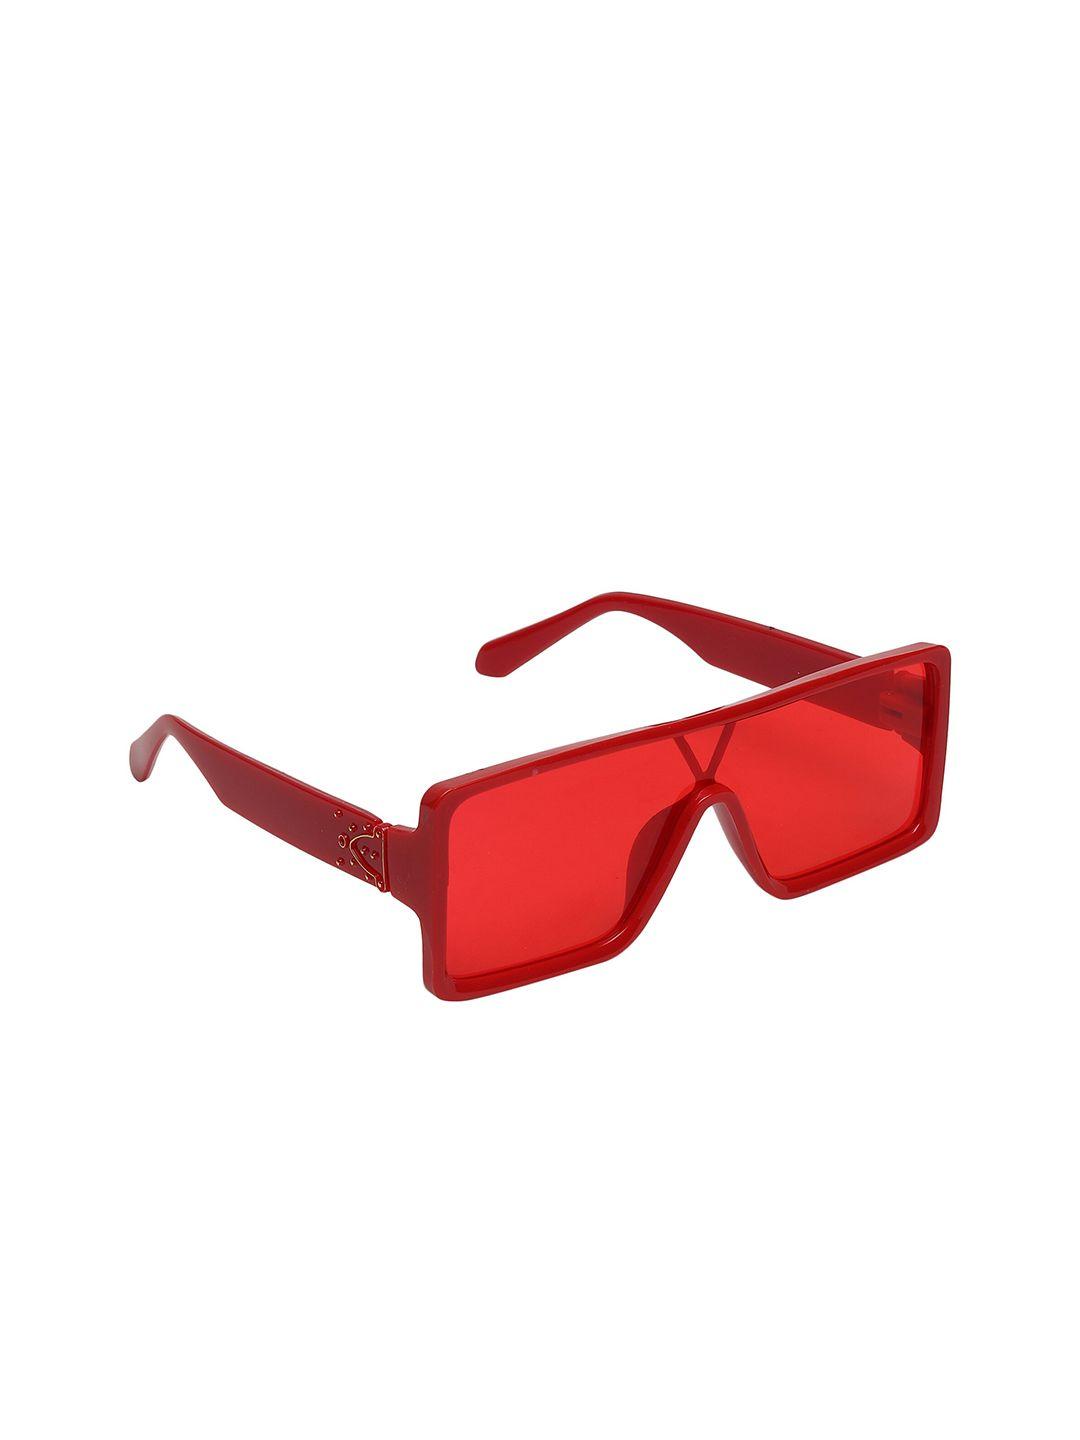 swiss design unisex red lens & red full rim shield sunglasses sdsg-famer-05